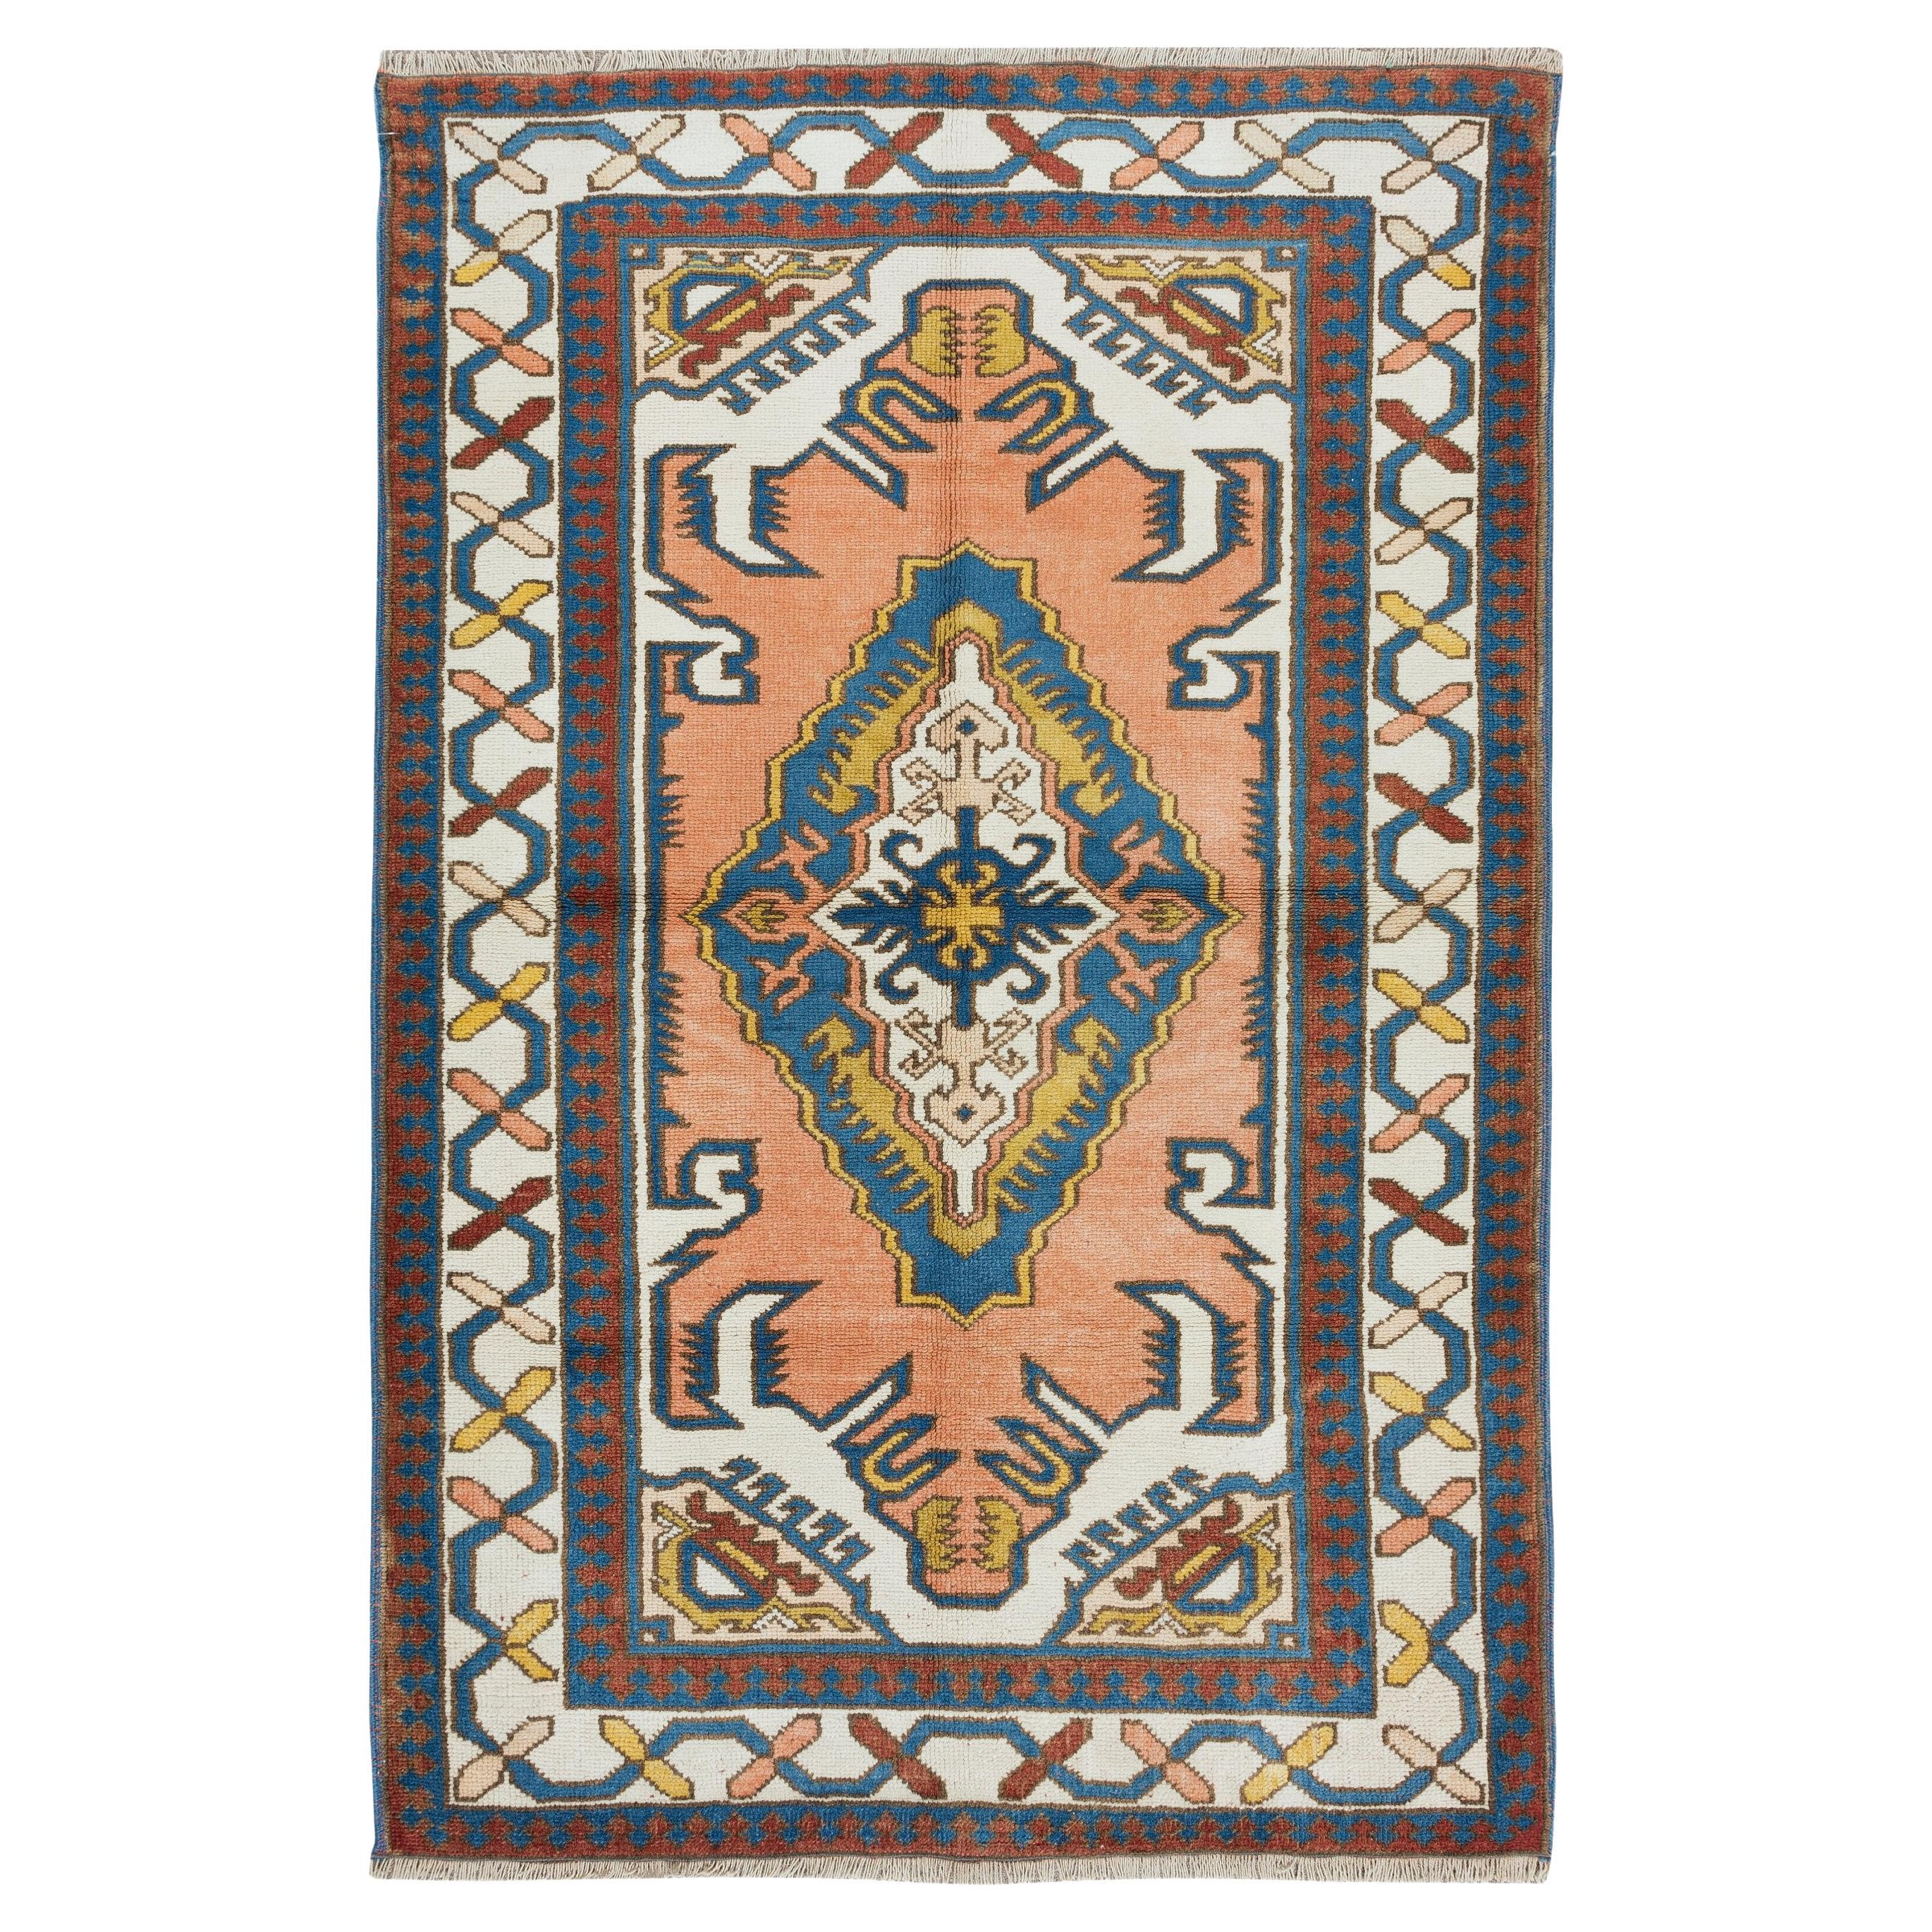 4x6 Ft Modern Handmade Geometric Design Türkischer Teppich, alle Wolle & Natürliche Farbstoffe